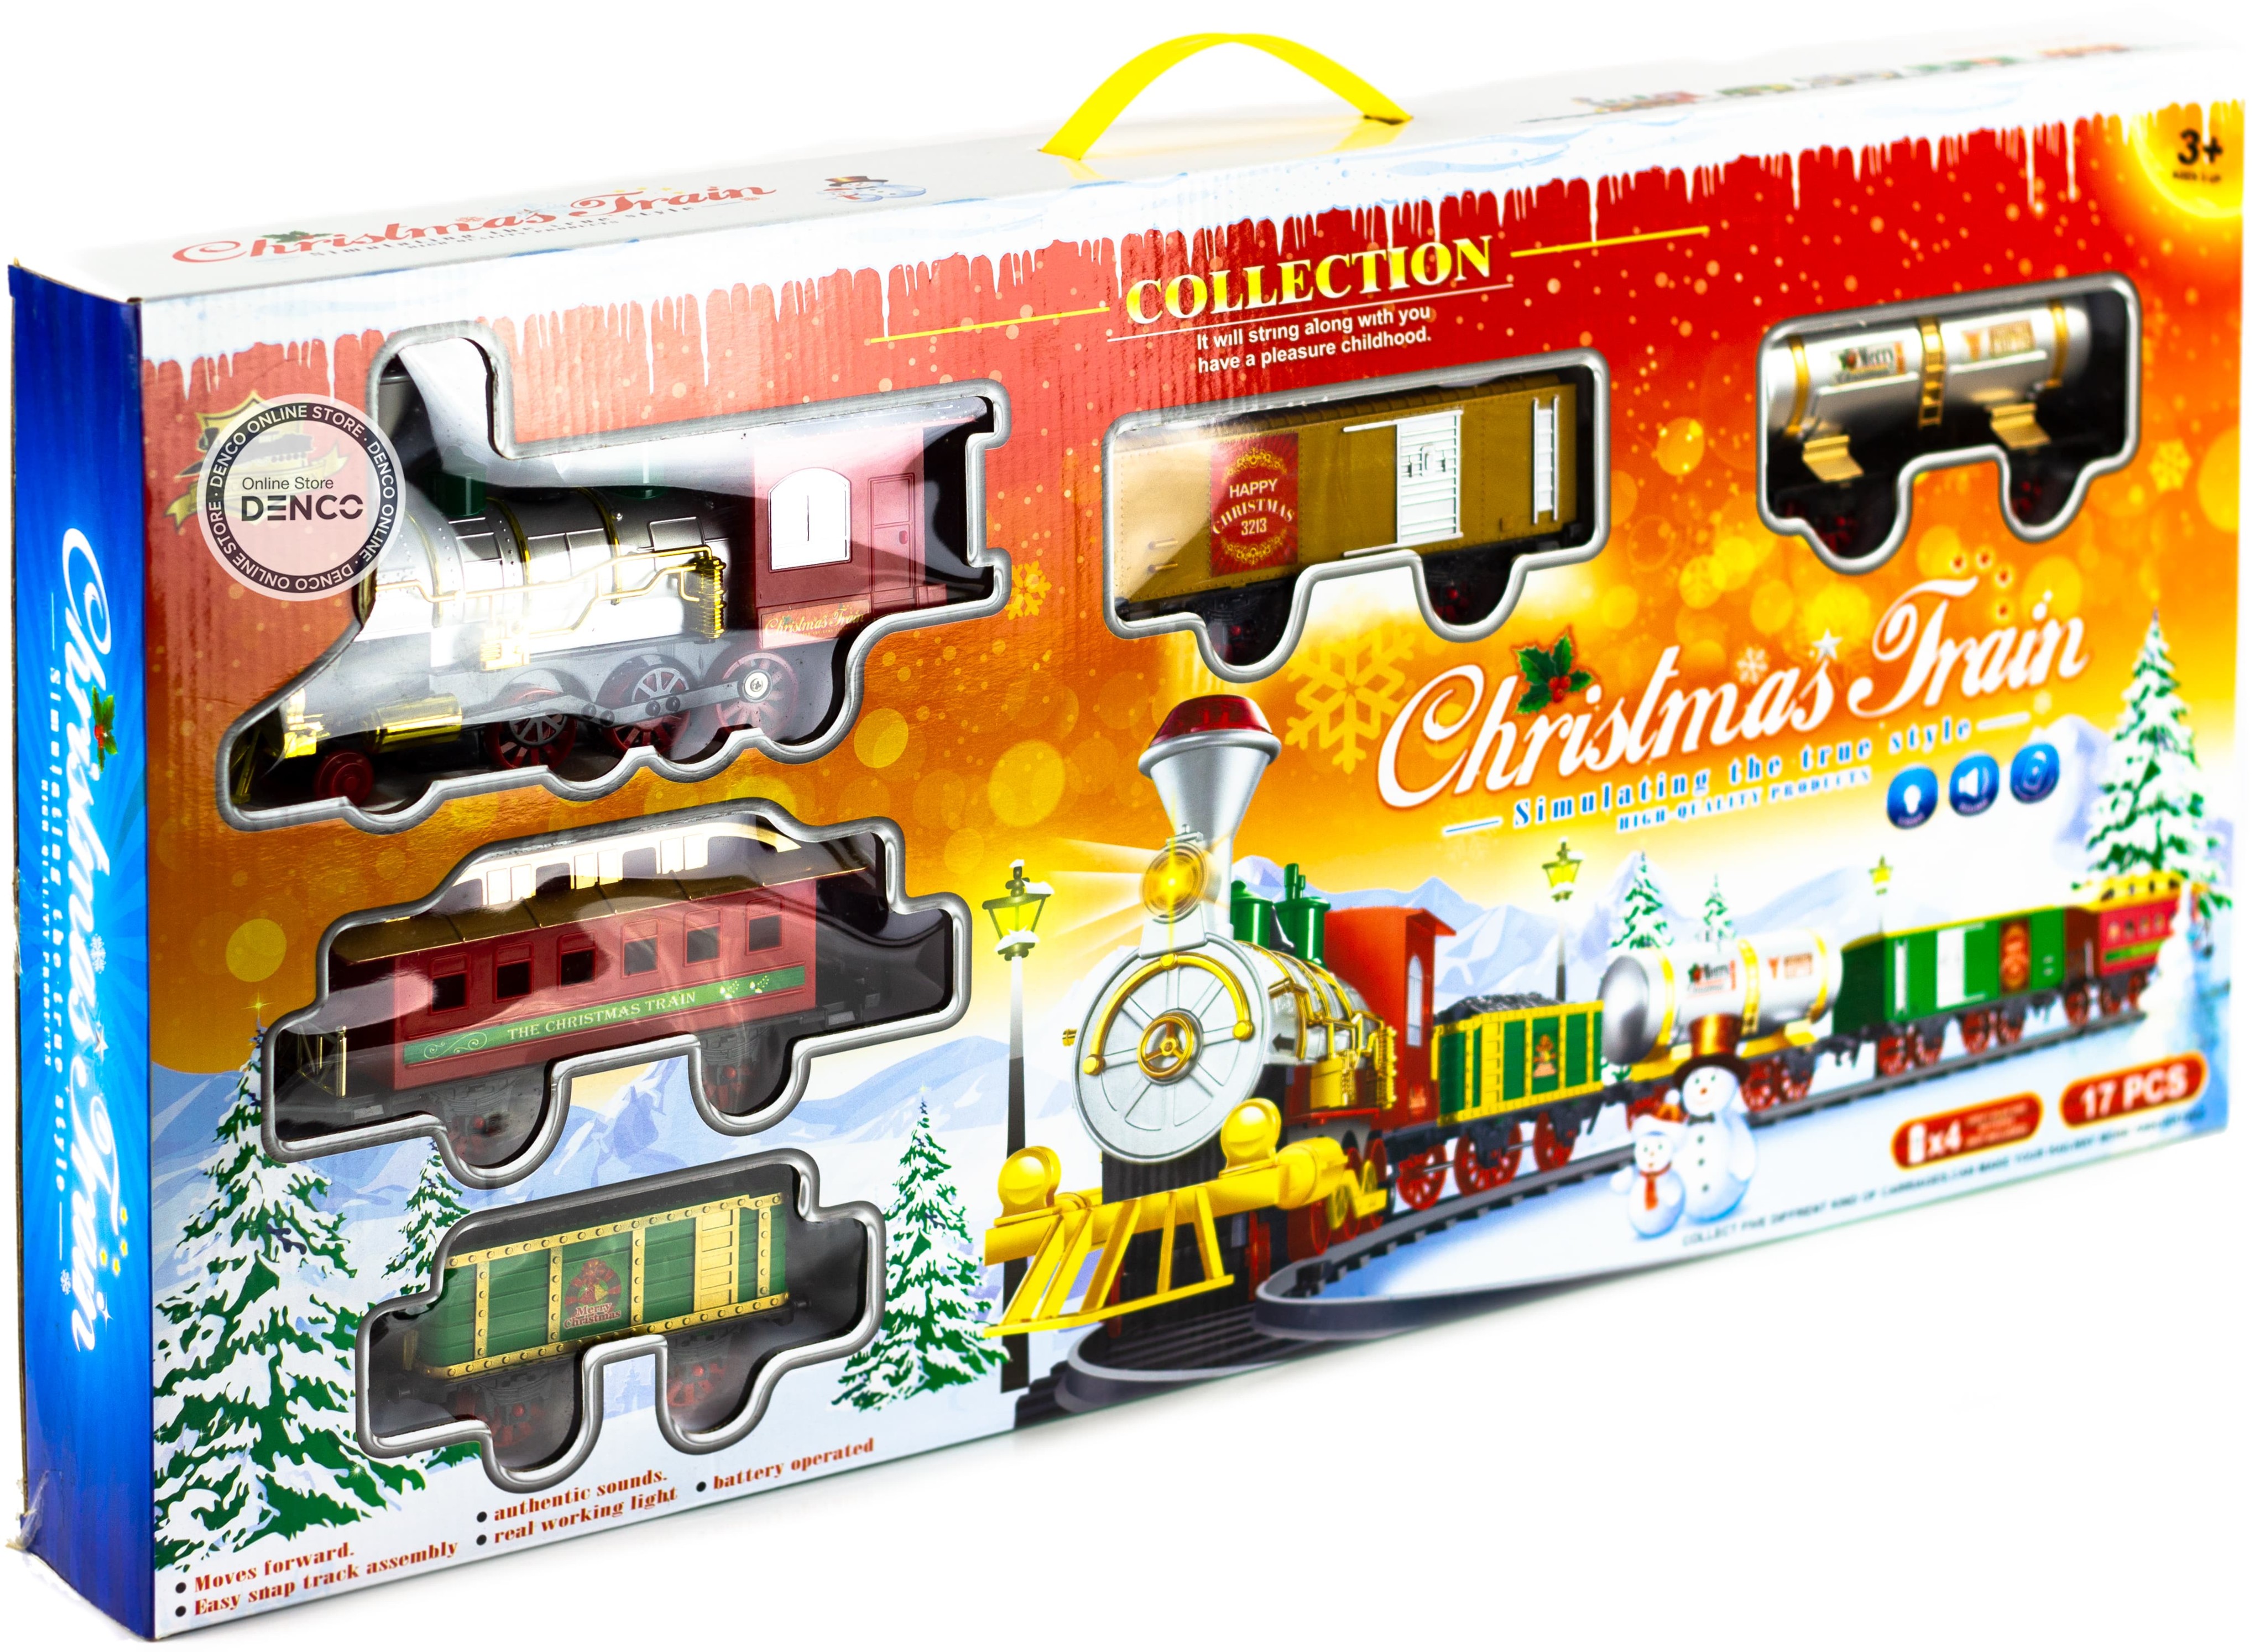 Игрушечный рождественский поезд «Christmas Tain» 1619, свет, звук, дым / 17 деталей